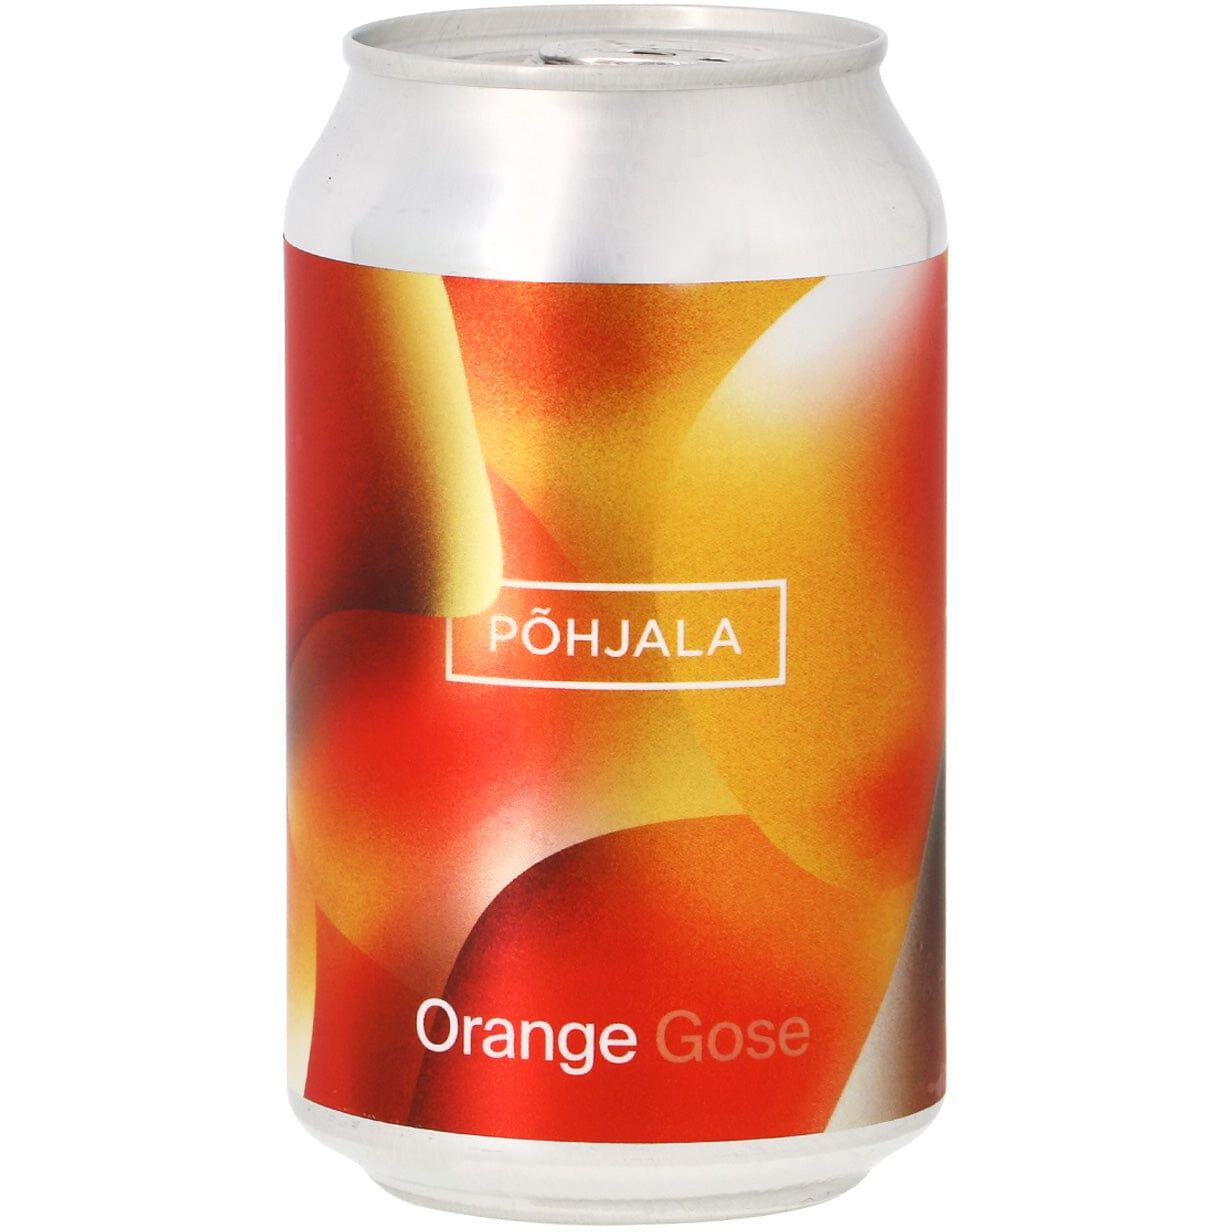 Пиво Pohjala Orange Gose светлое 5.5% 0.33 л ж/б - фото 1